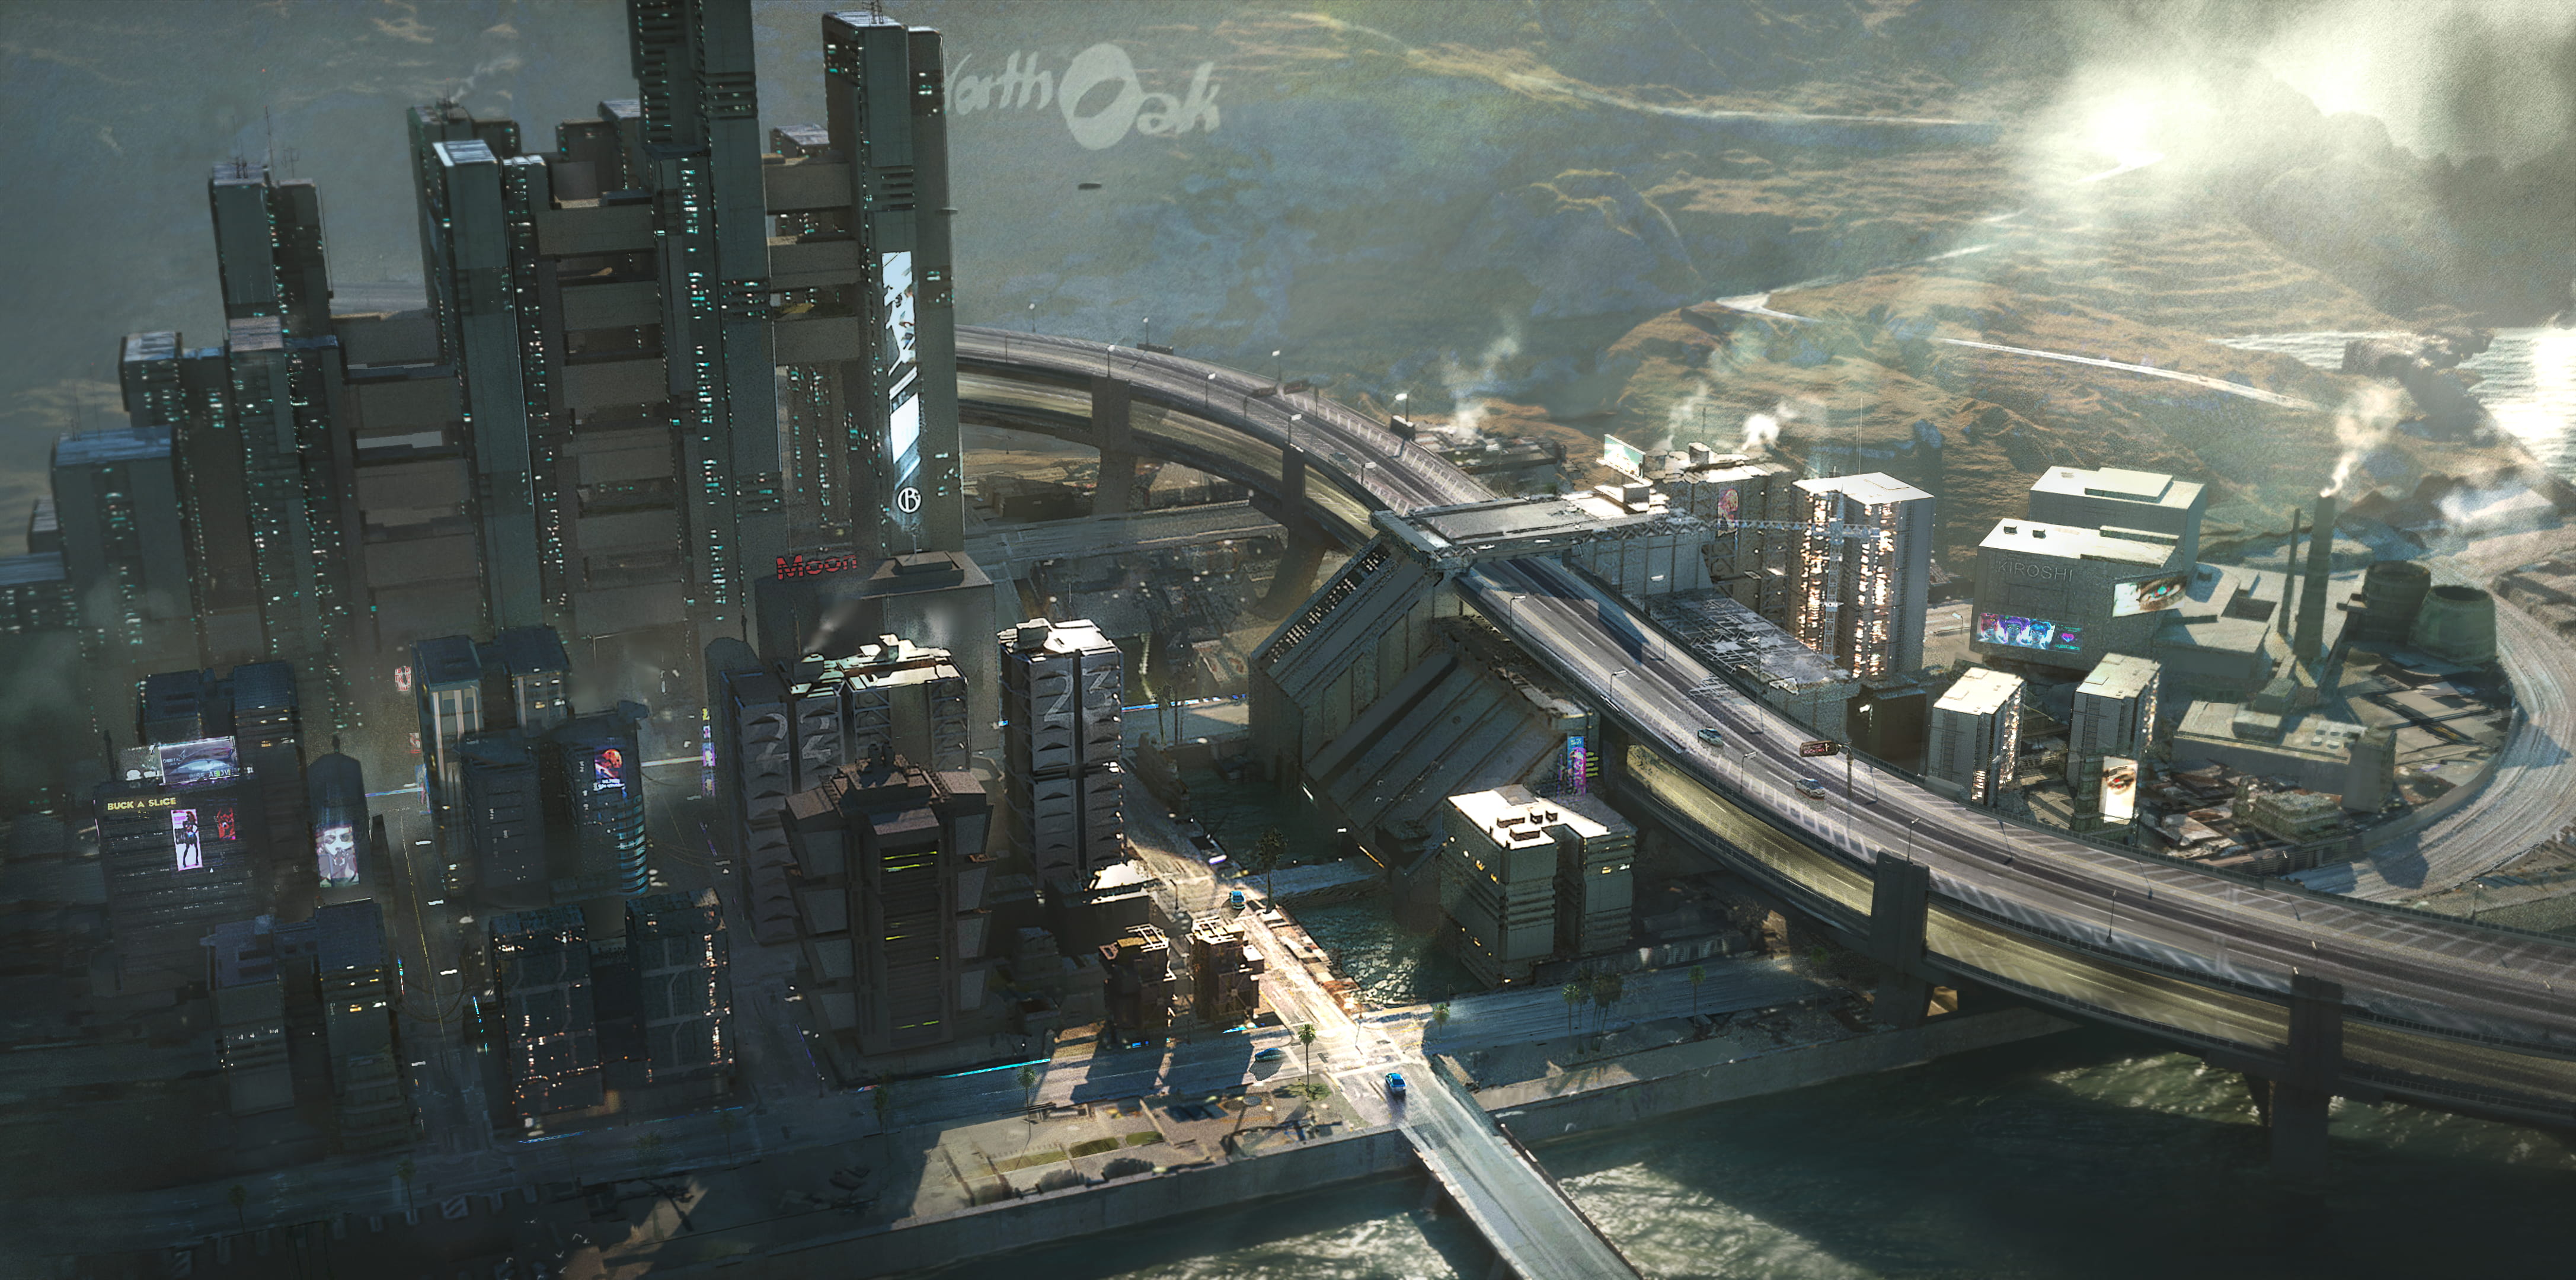 《電馭叛客2077》新截圖及原畫發布 夜之城如此美麗